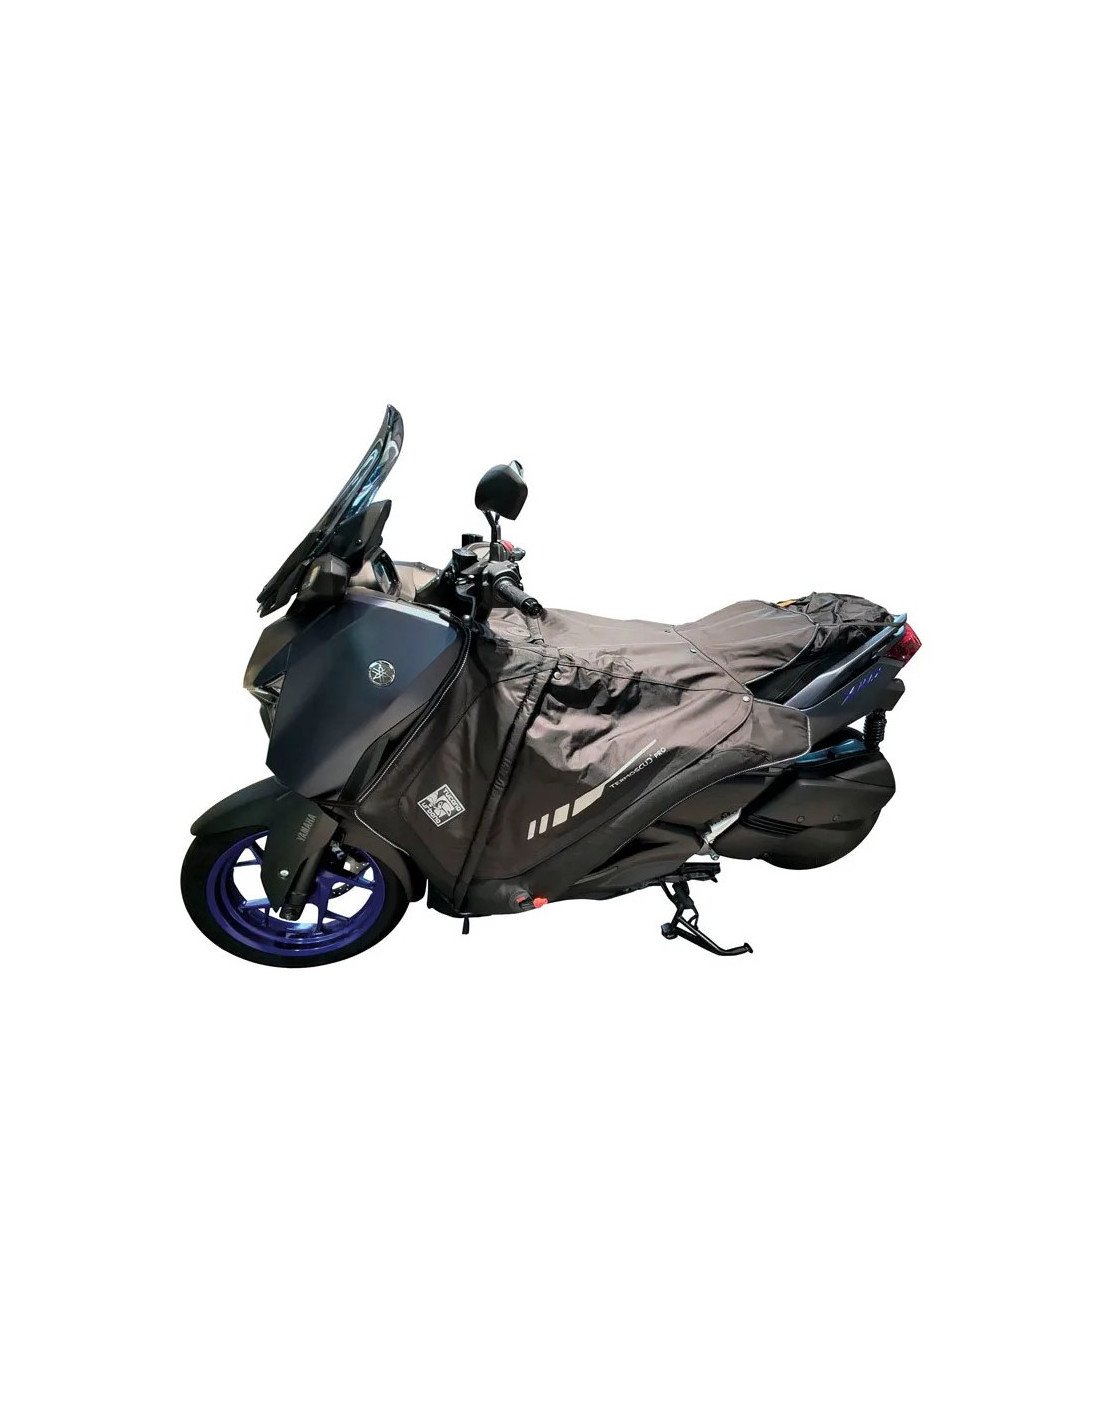 Tablier de protection contre la pluie et le froid scooter iXS